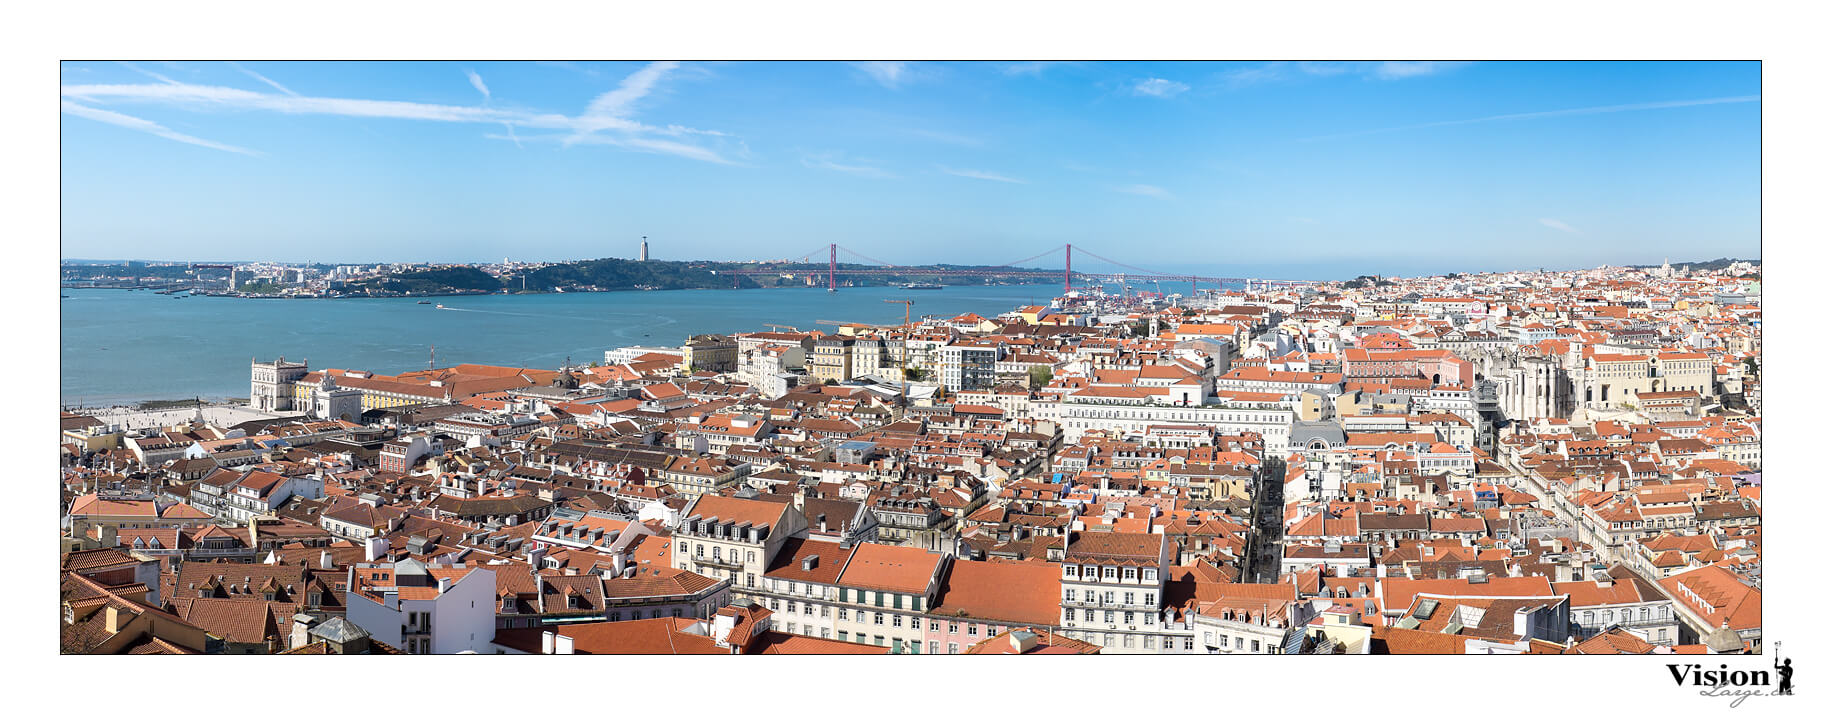 Panorama sur Lisbonne au Portugal